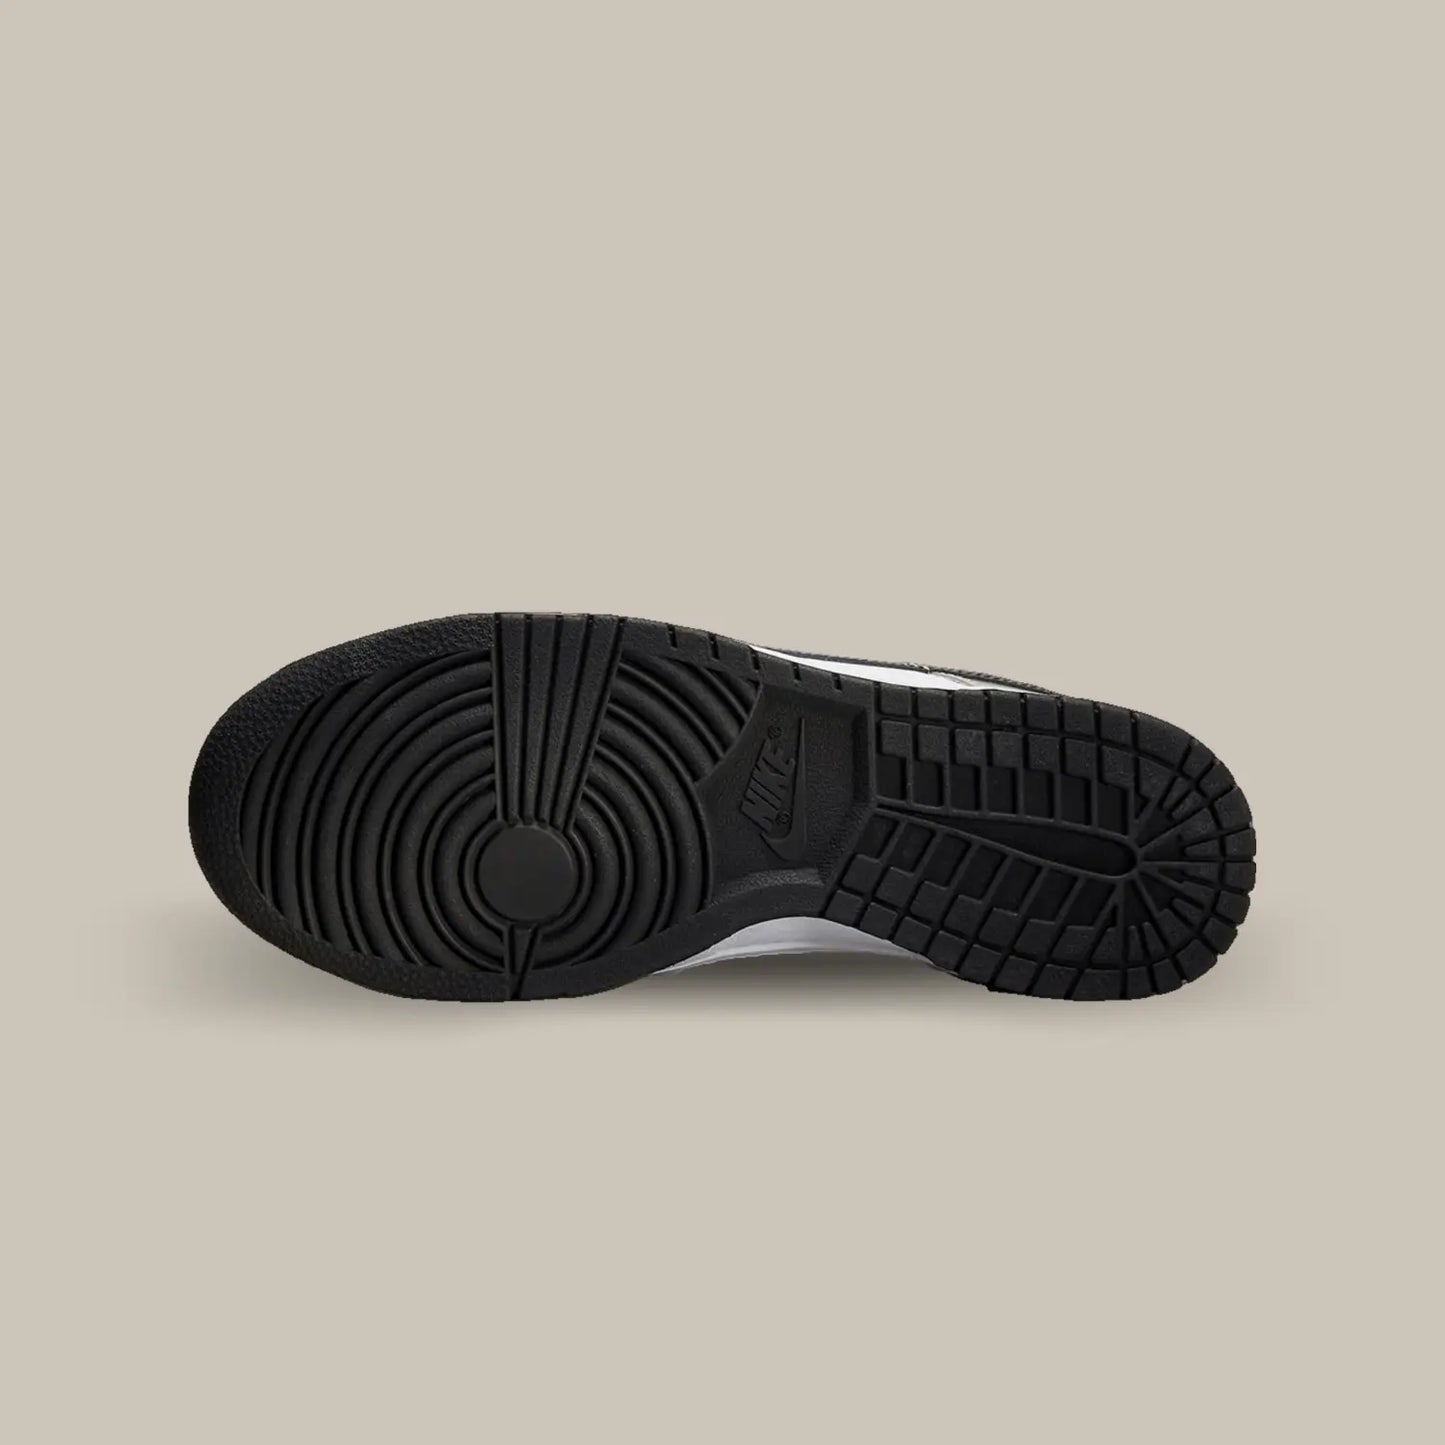 La semelle de la Nike Dunk Low Light Iron Ore Black de couleur noir.